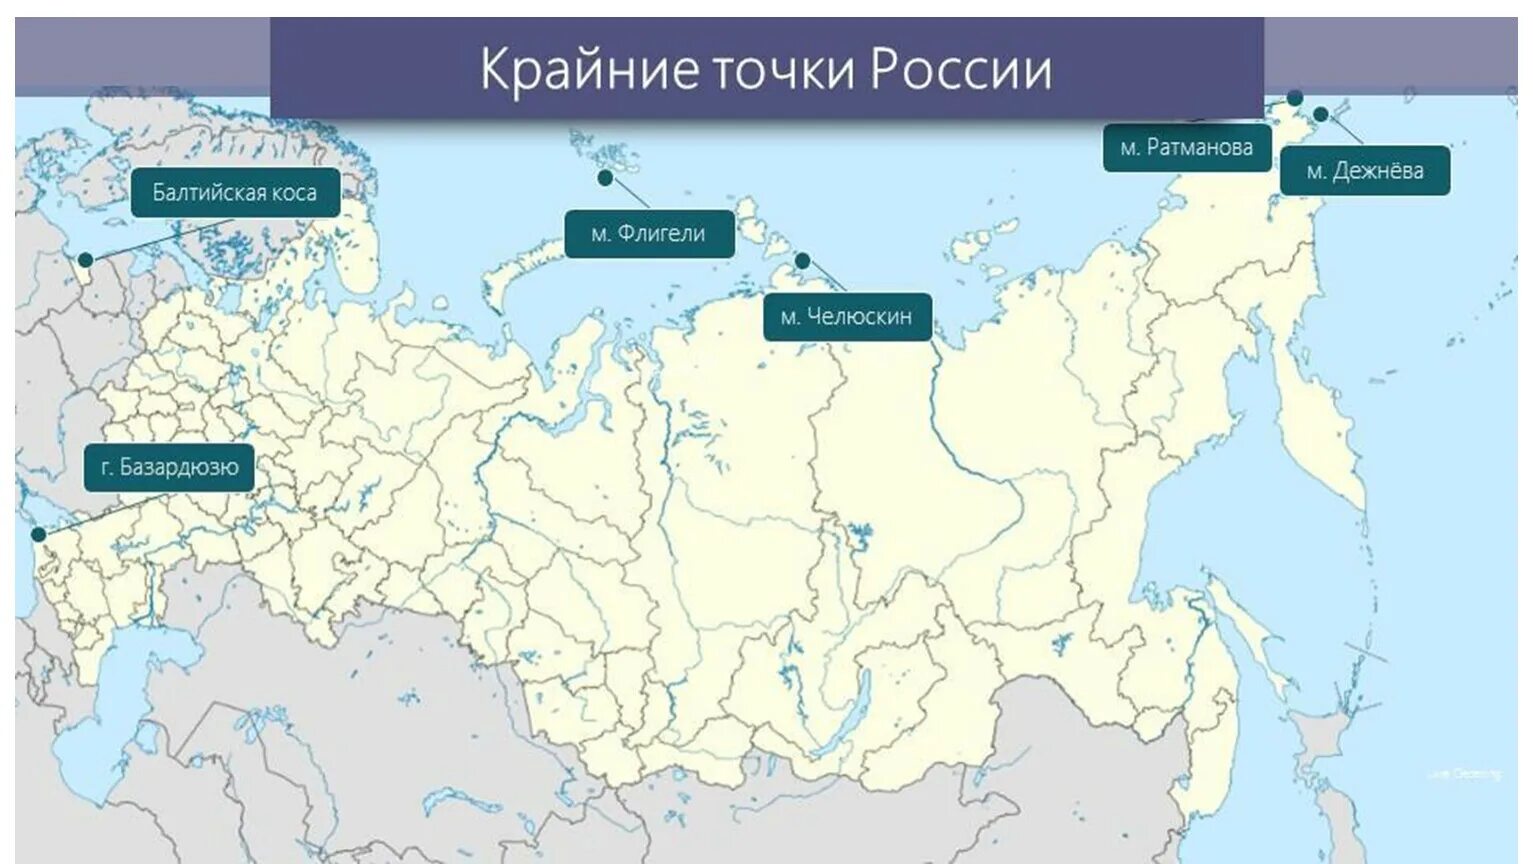 Крайние точки России на карте России. Крайние материковые точки РФ на карте. Крайняя Северная точка России на карте. Крайнее ТОЧКИРОССИИ И их кординаты.